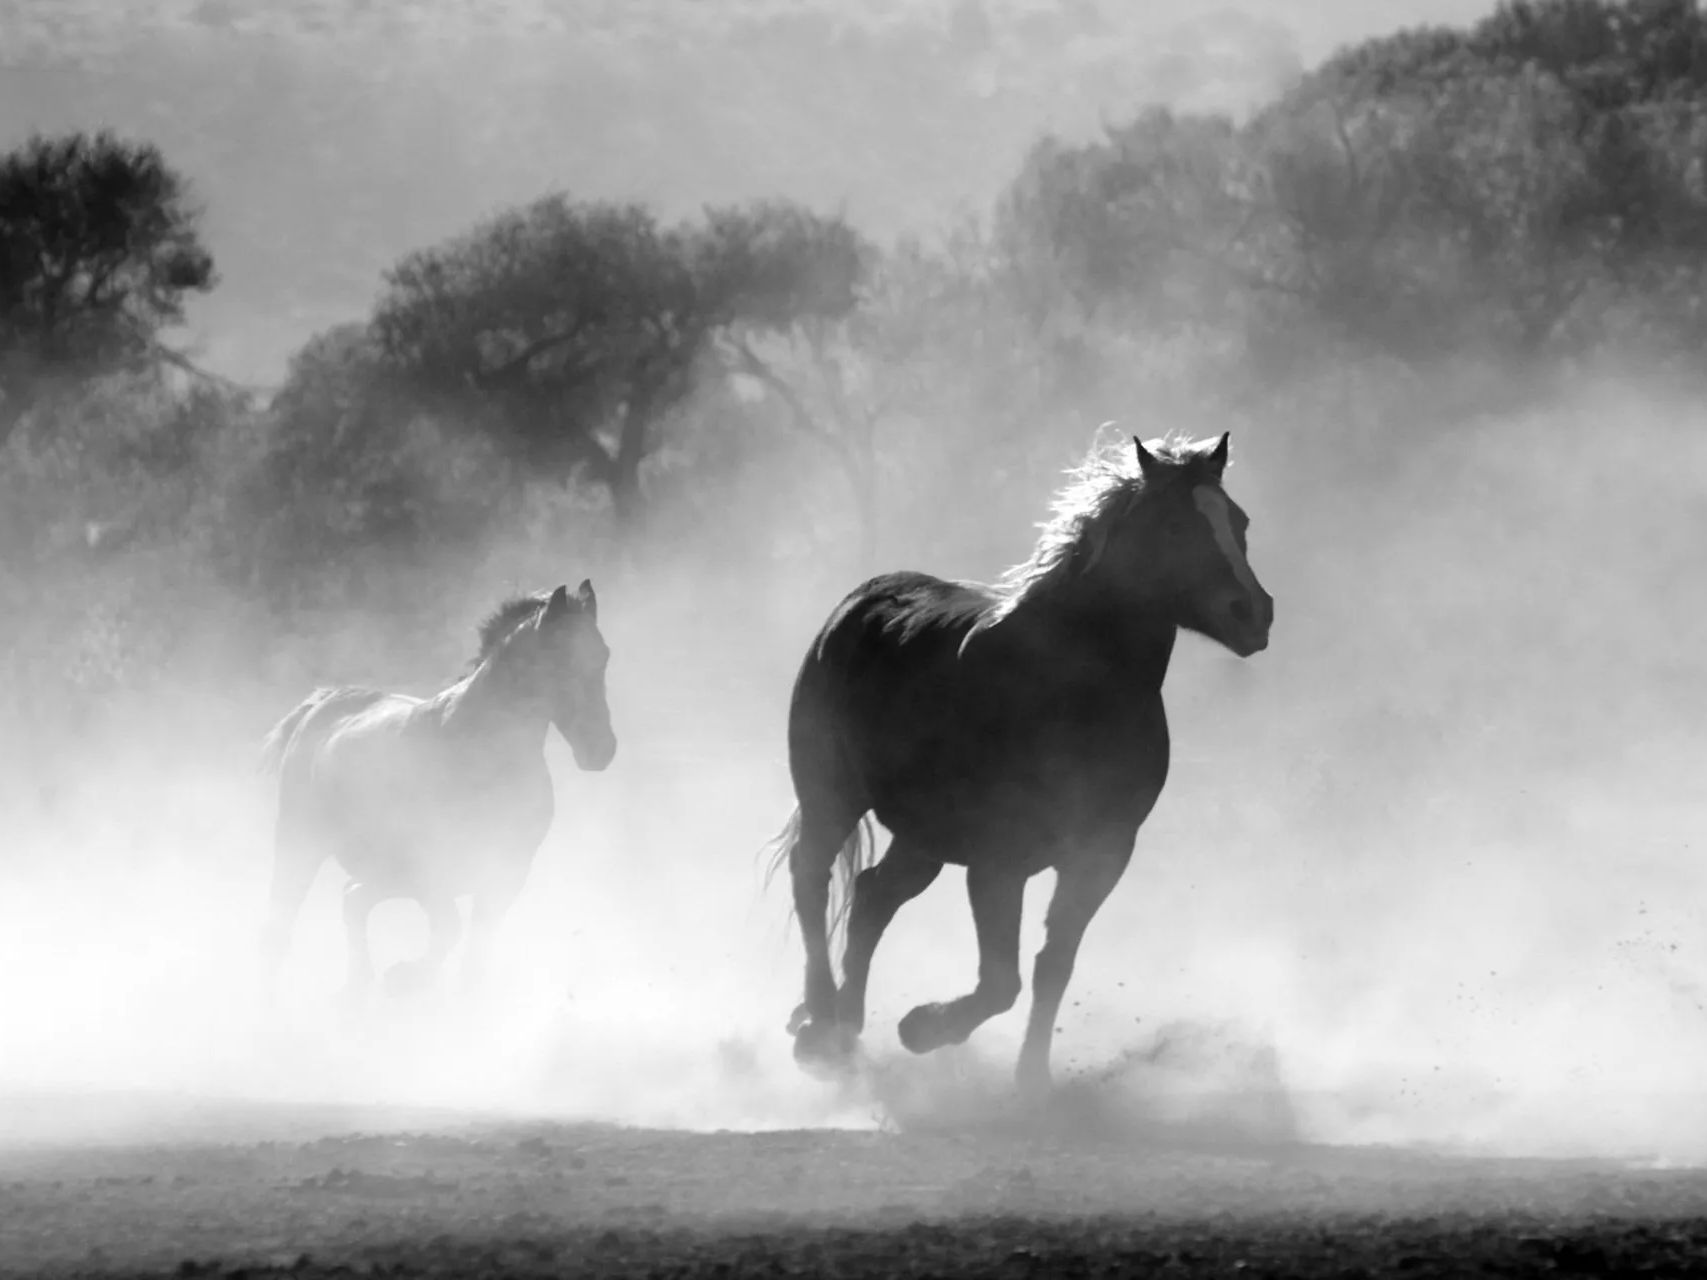 deux chevaux courent dans un champ rempli de poussière